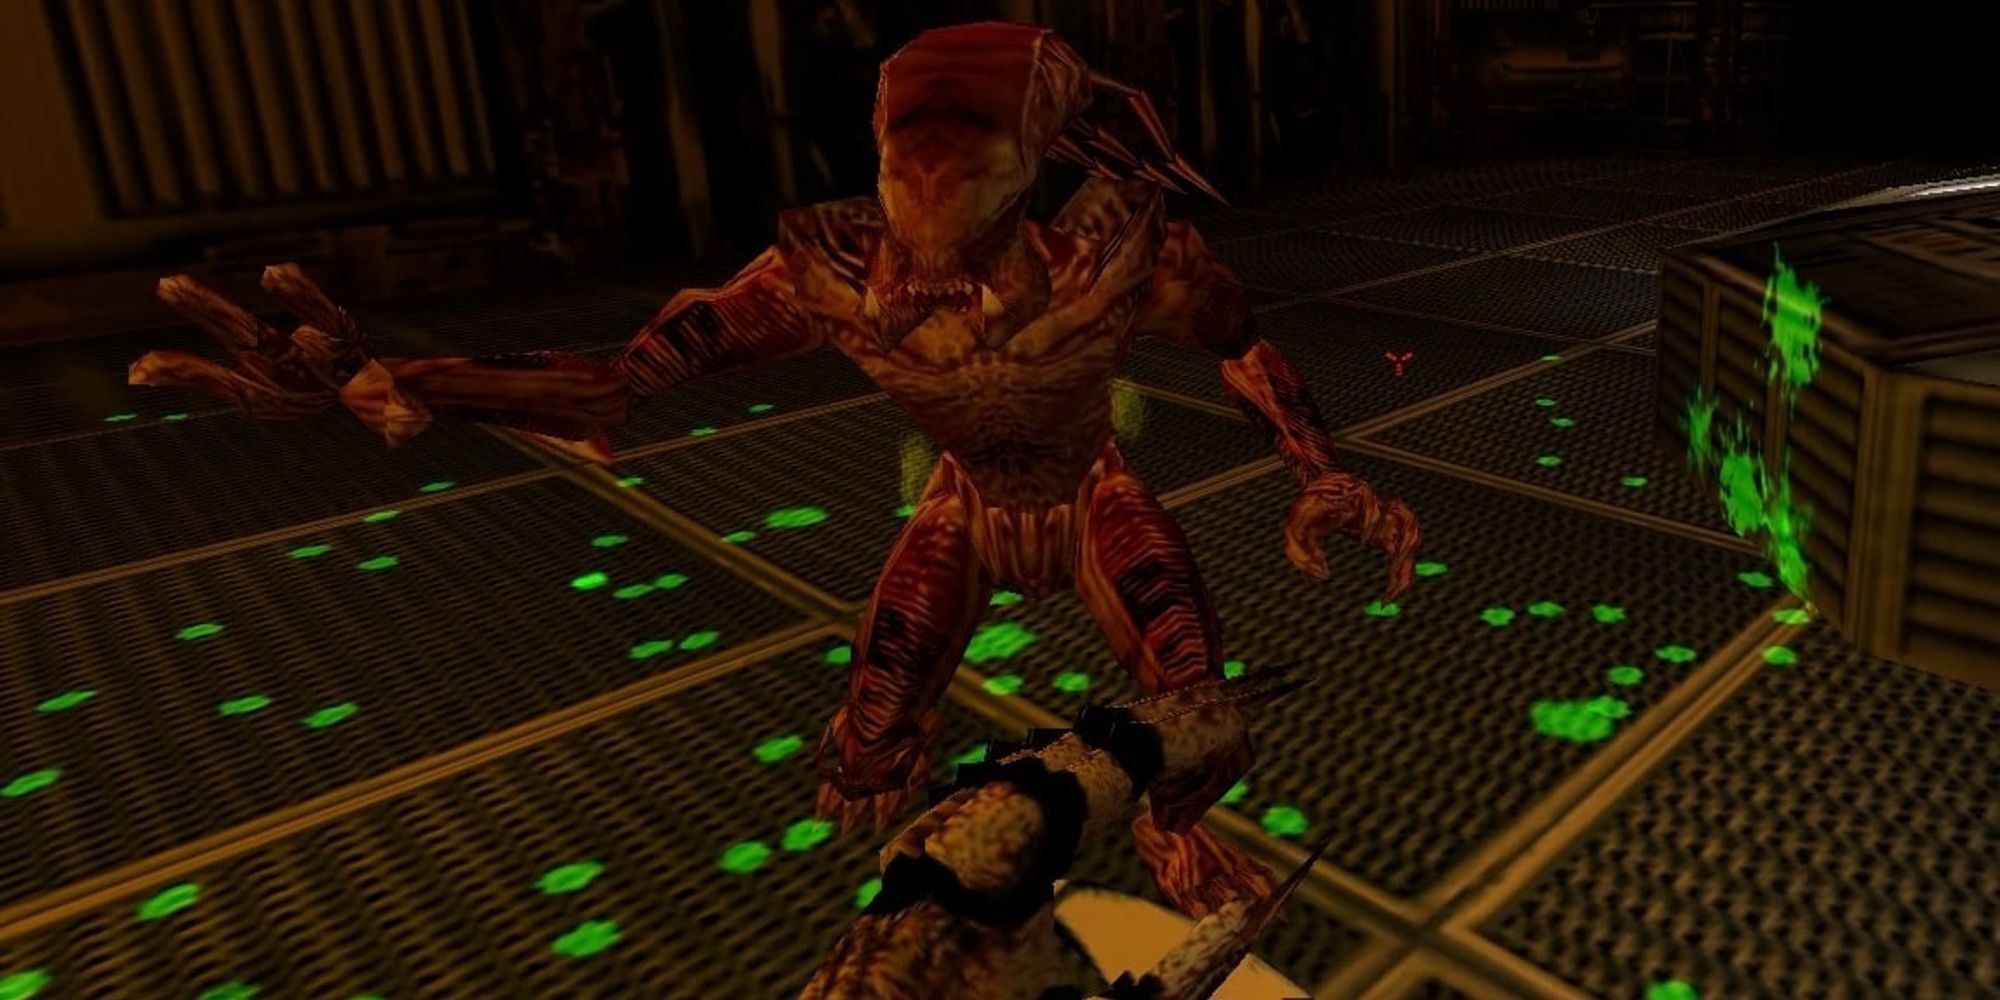 Predalien boss fight as a Yautja in Aliens Vs. Predator 1999